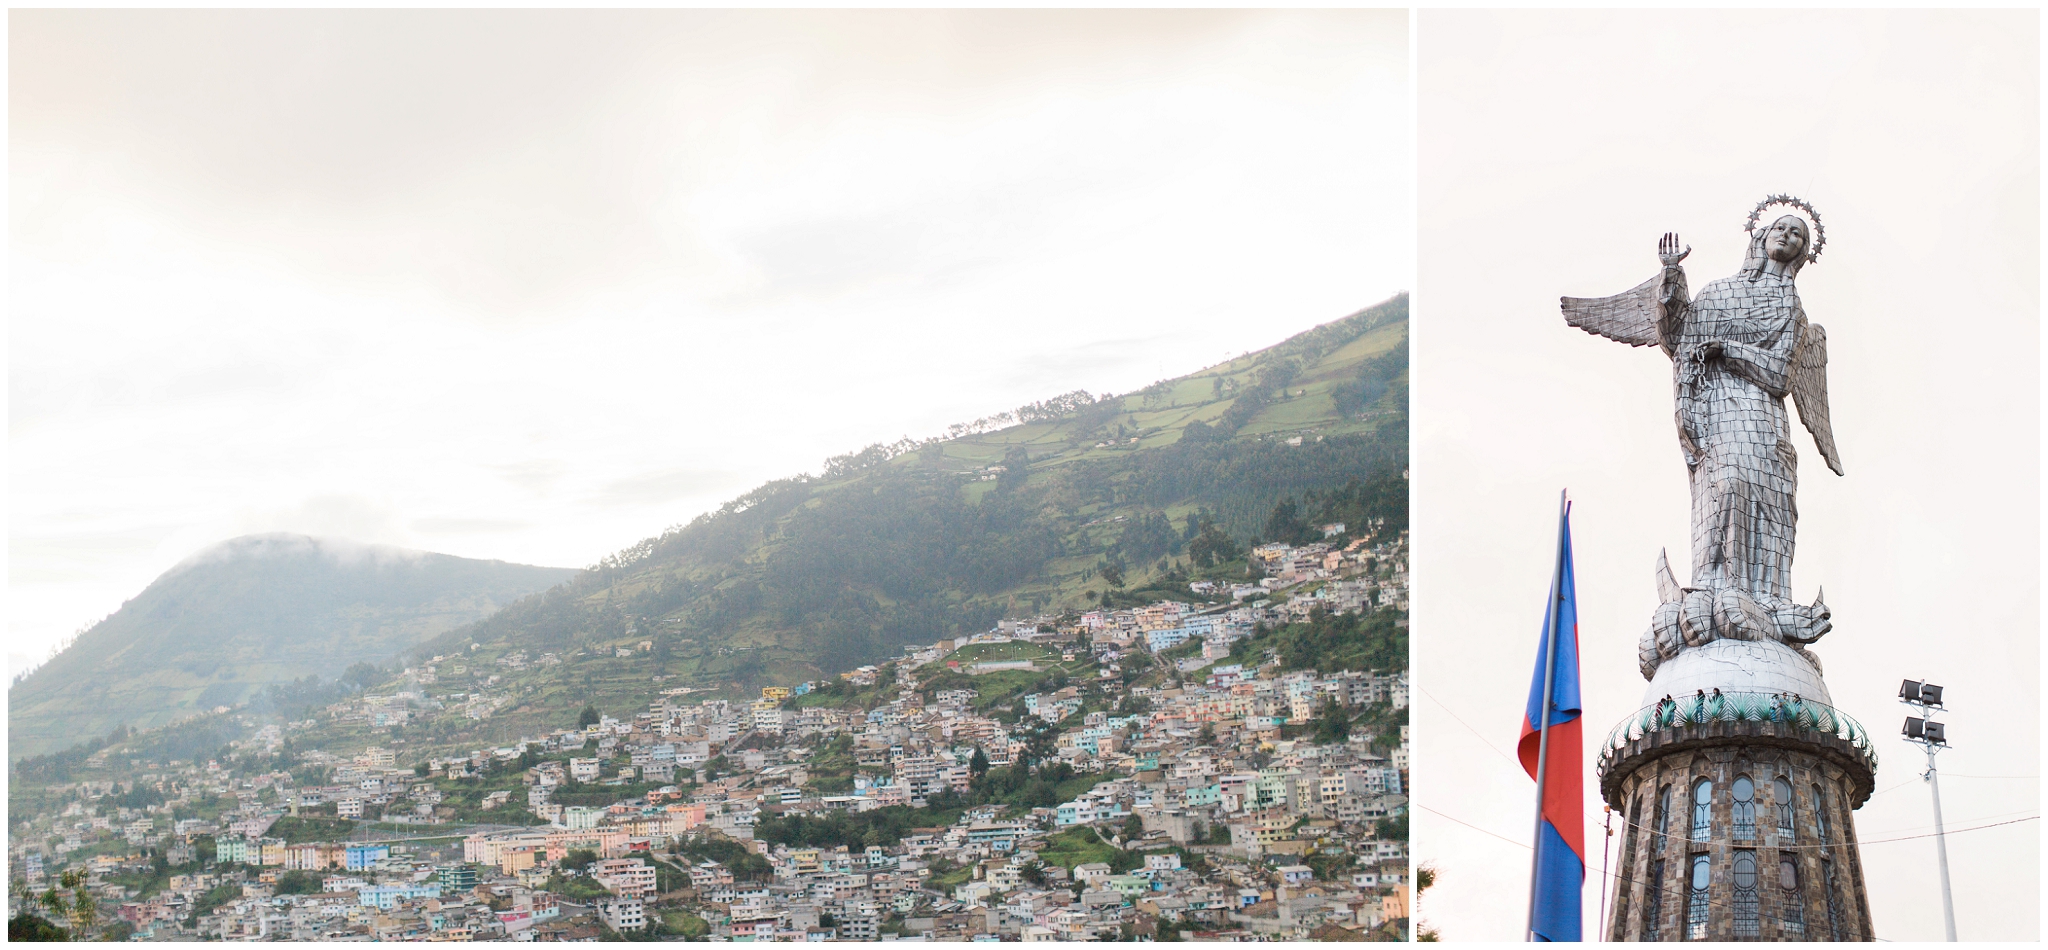 Quito, Ecuador | ©Fleckography 2015 www.fleckography.com, www.morningsbythesea.com